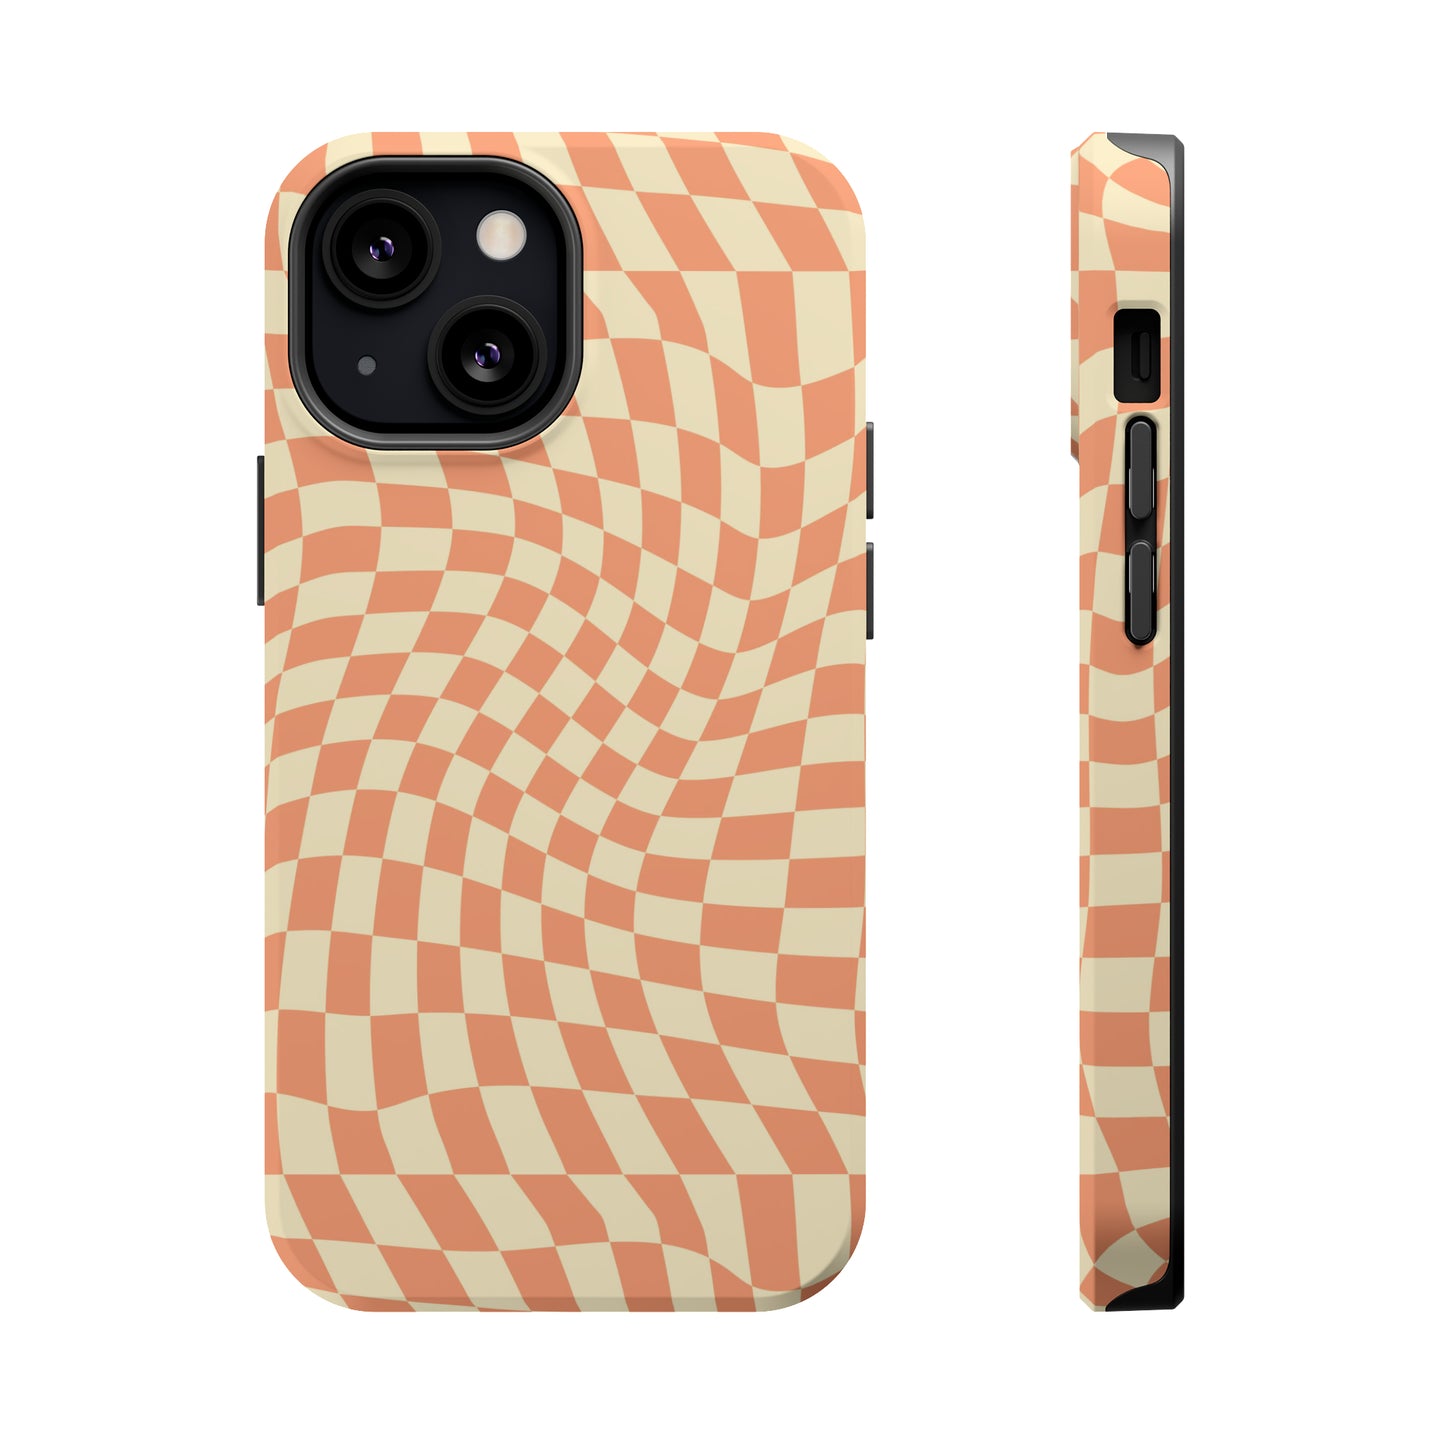 Wavy Peach Cream Checkerboard Case